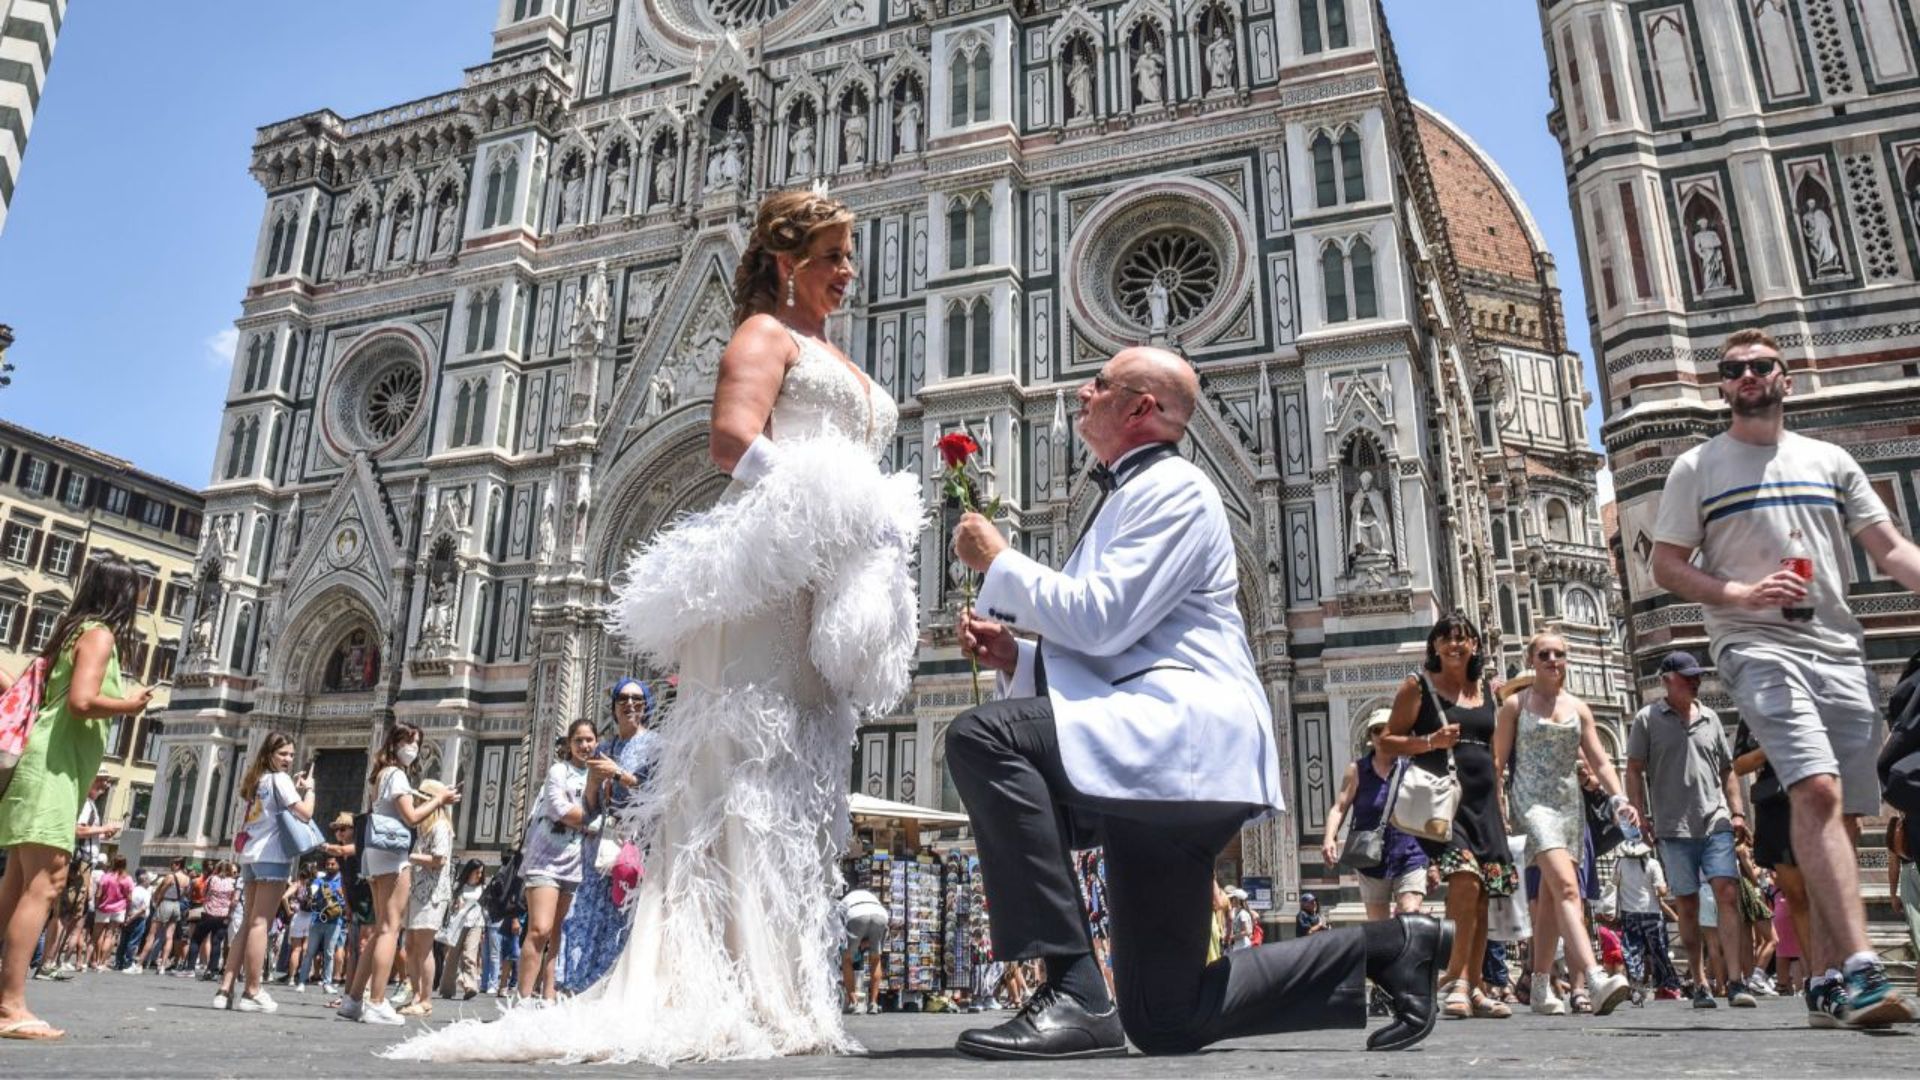 Visita las bellezas de Florencia e inmortaliza tus recuerdos con un servicio fotográfico profesional